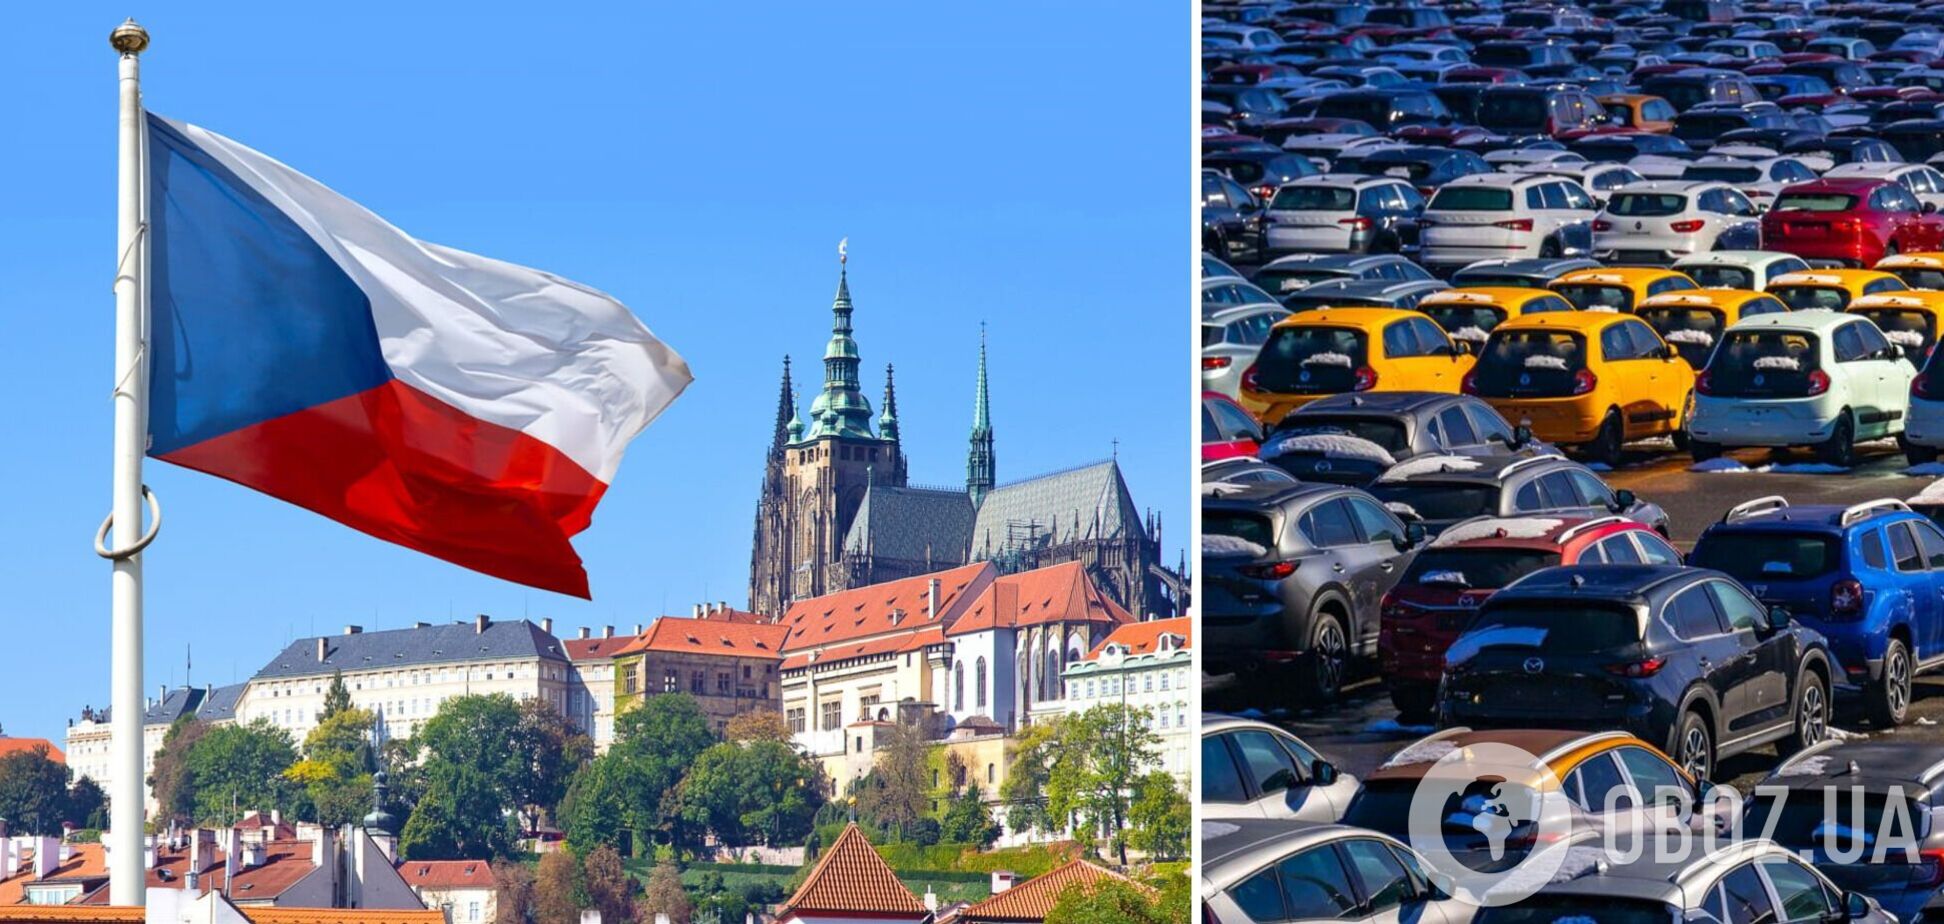 Чешский парламент одобрил законопроект о реестре украинских автомобилей